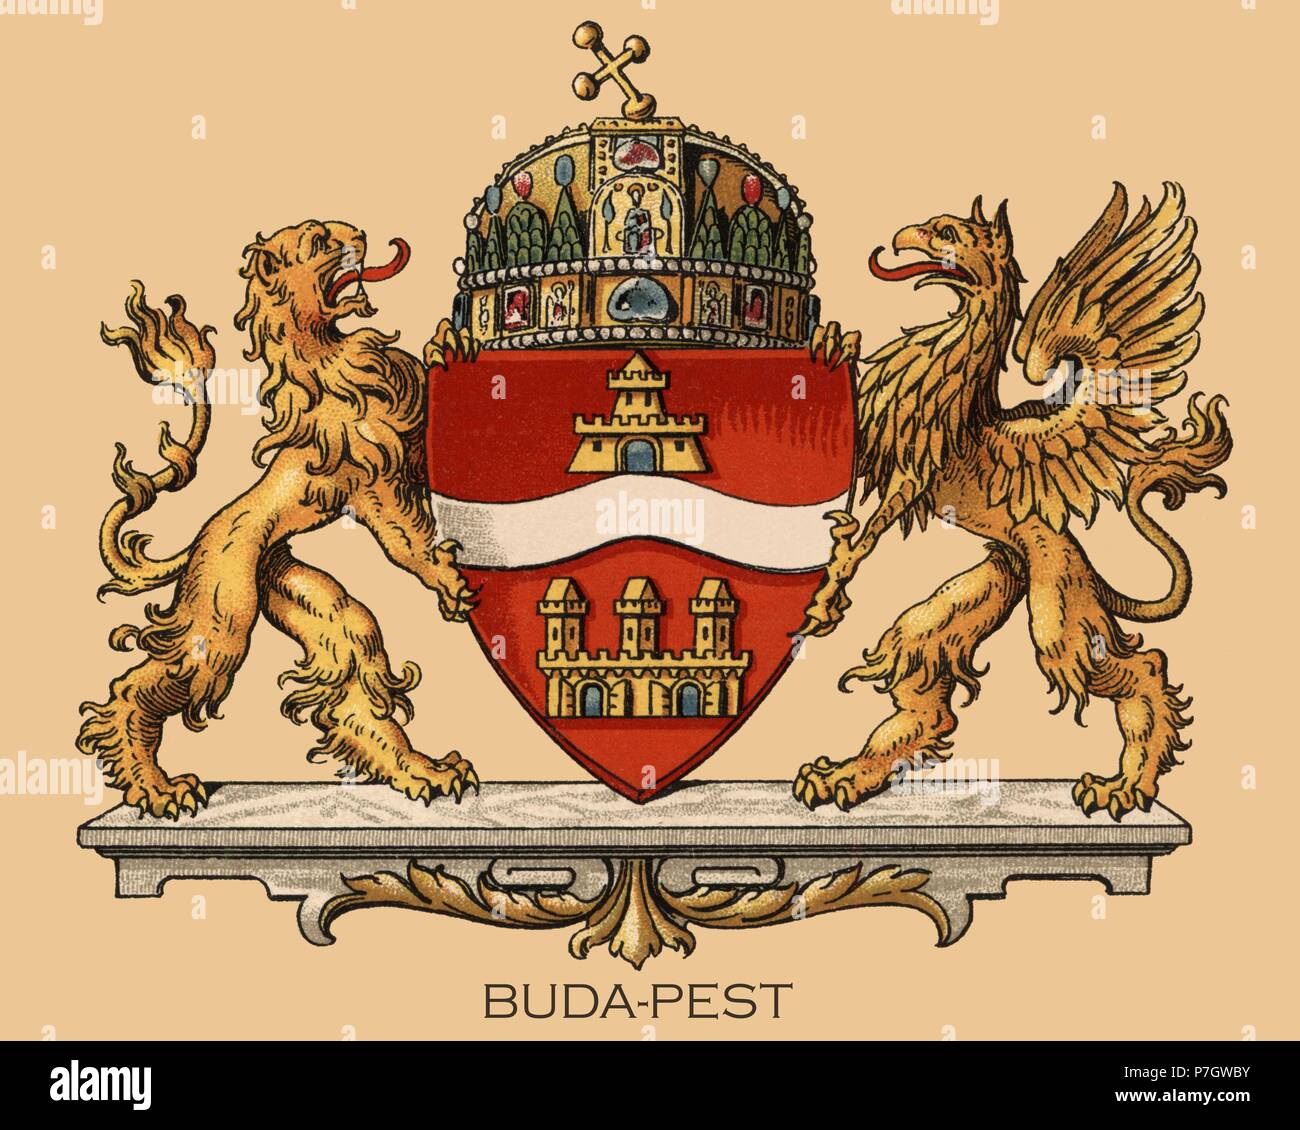 Europa. Escudo heráldico de la ciudad de Budapest, Hungría. Grabado de 1870. Stock Photo